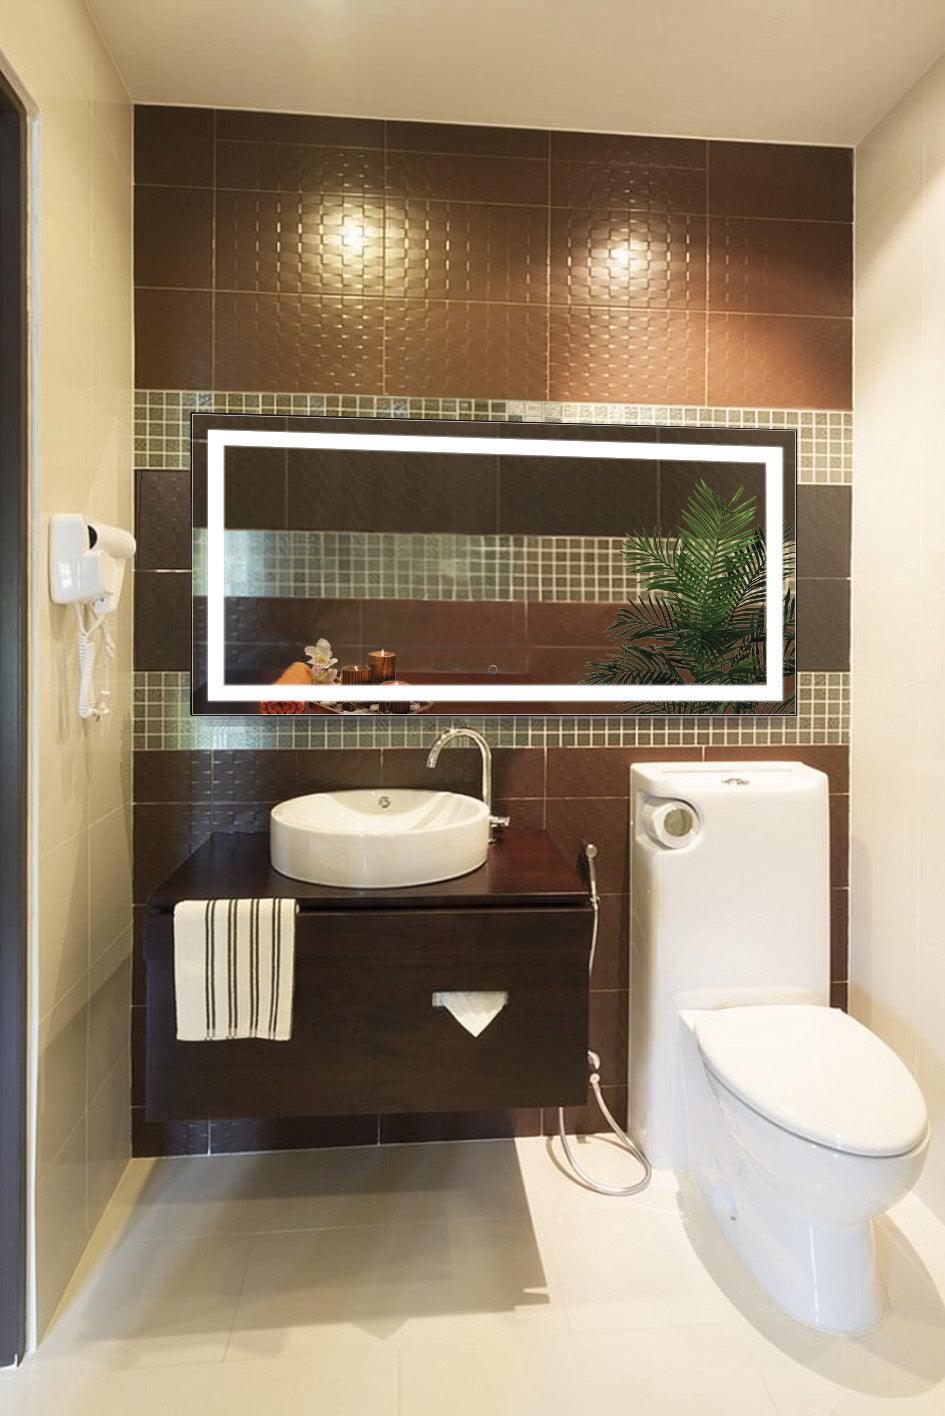 Krugg Icon 60″ X 30″ LED Bathroom Mirror w/ Dimmer & Defogger